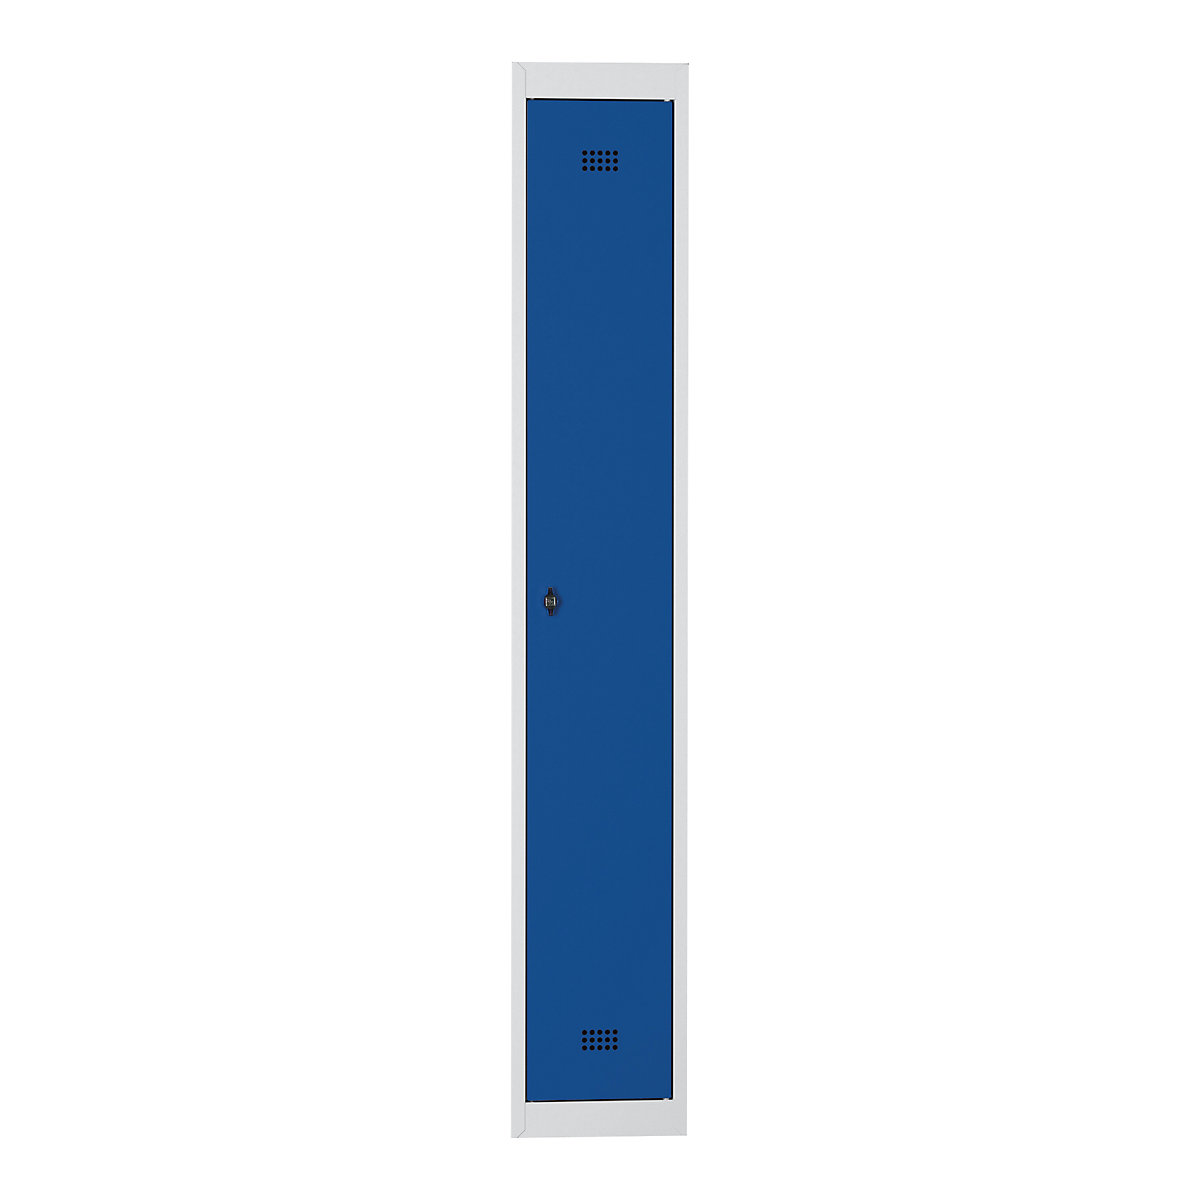 Wolf Stahlspind, 1 Abteil, Höhe 1700 mm, Breite 300 mm, 1 Hutboden, 1 Kleiderstange, Anbauelement, lichtgrau / enzianblau